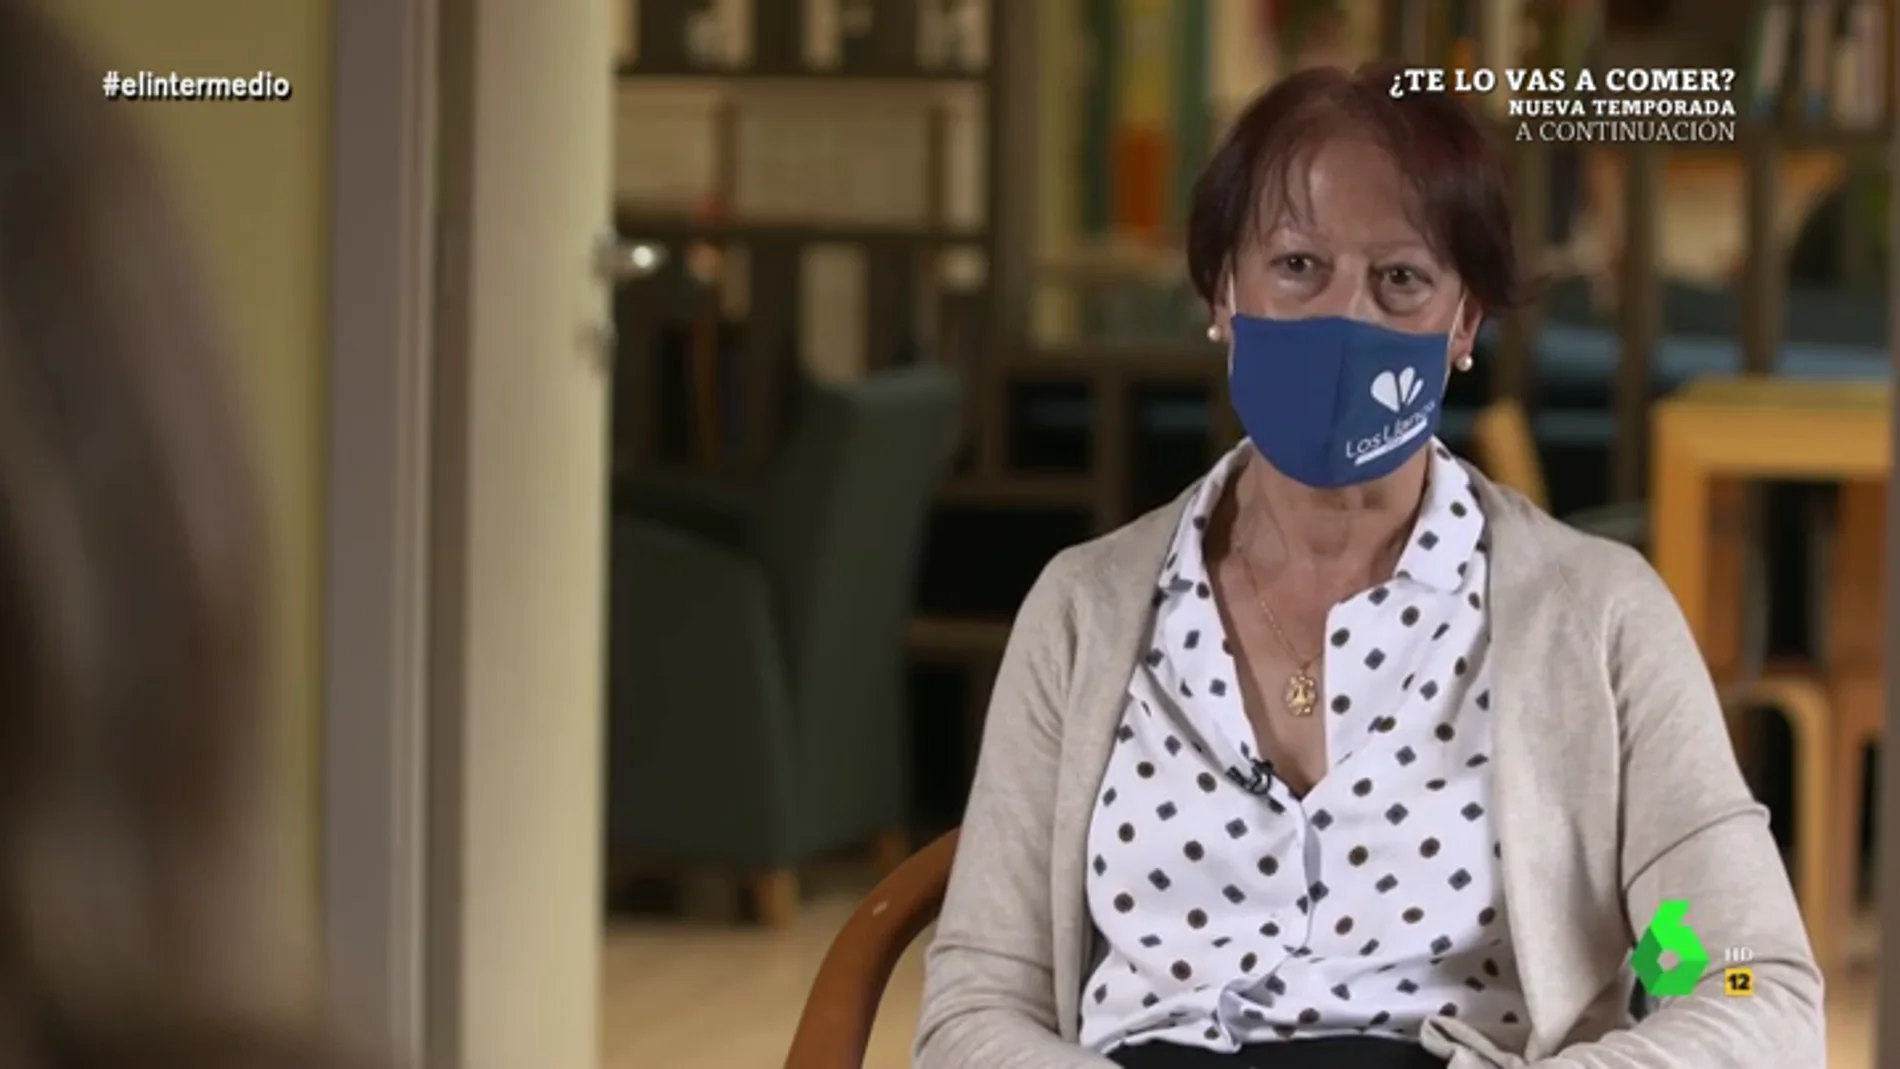 El duro testimonio de Juani, trabajadora en una residencia de ancianos: "No se me olvidará su miedo en los ojos"